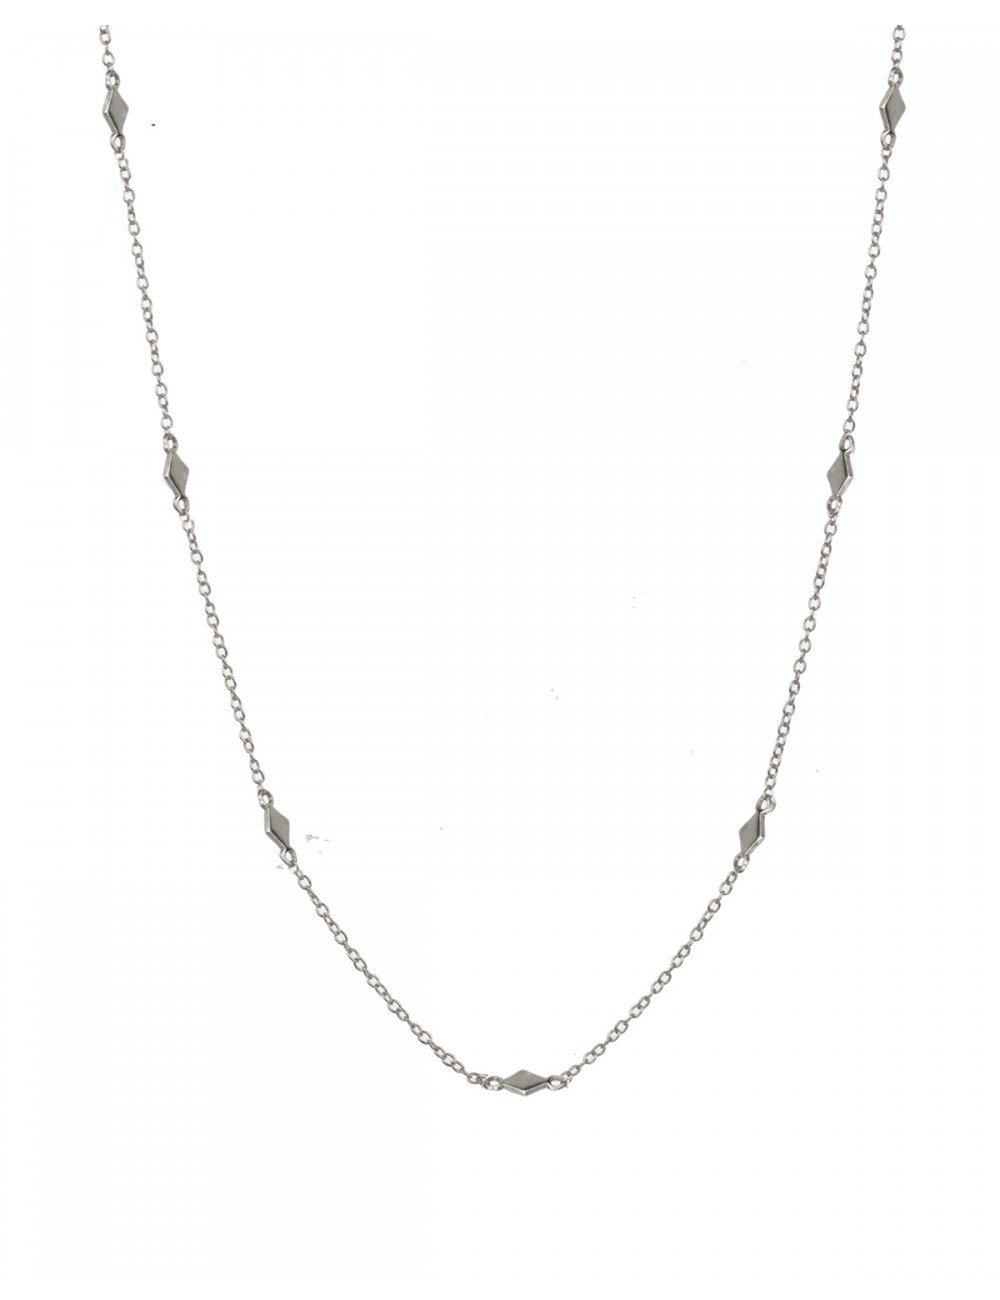 Domino silver - Silver necklaces - Trium Jewelry